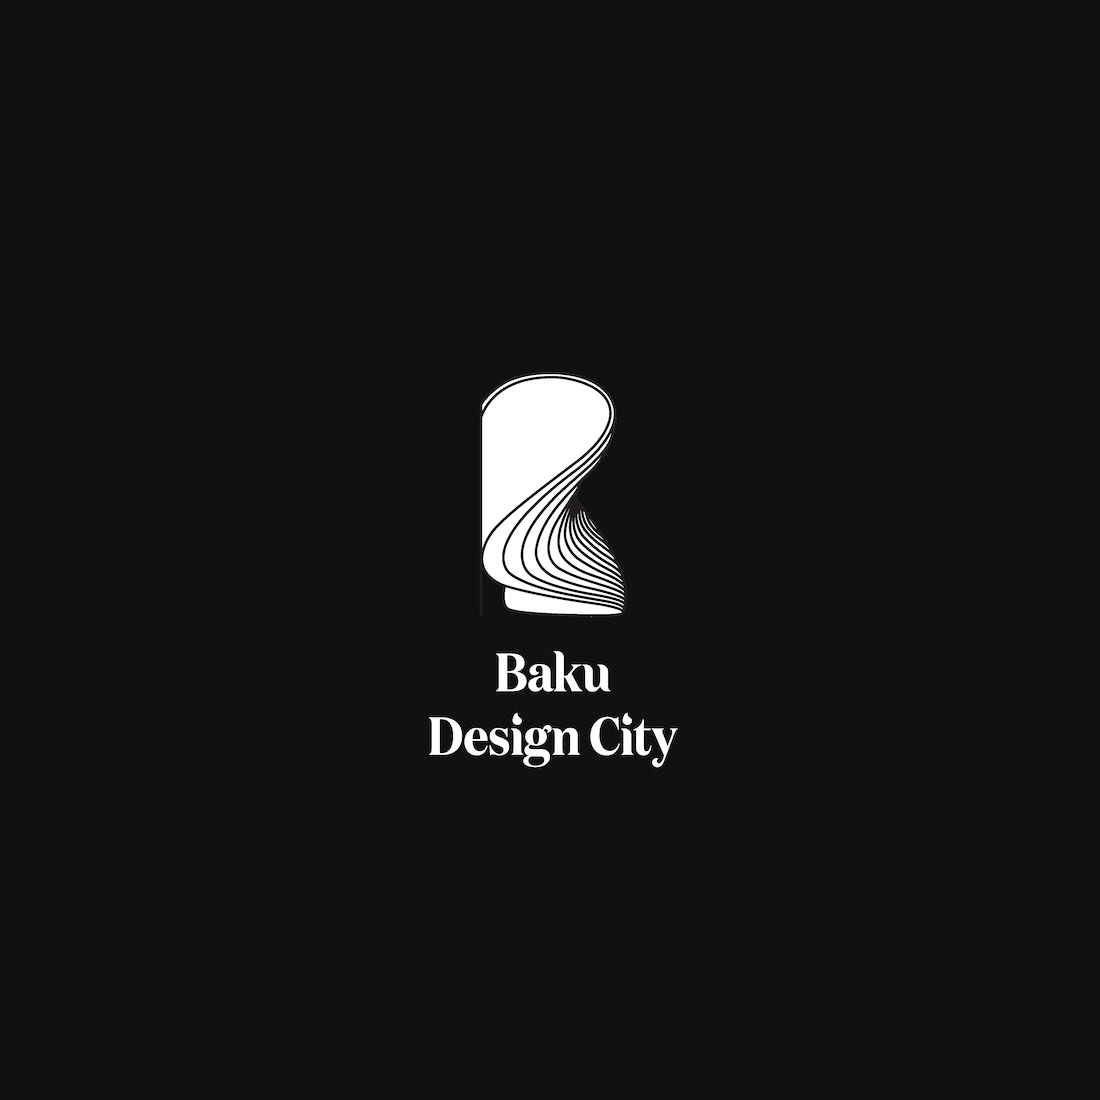 baku design city branding  logo Logotype monogram